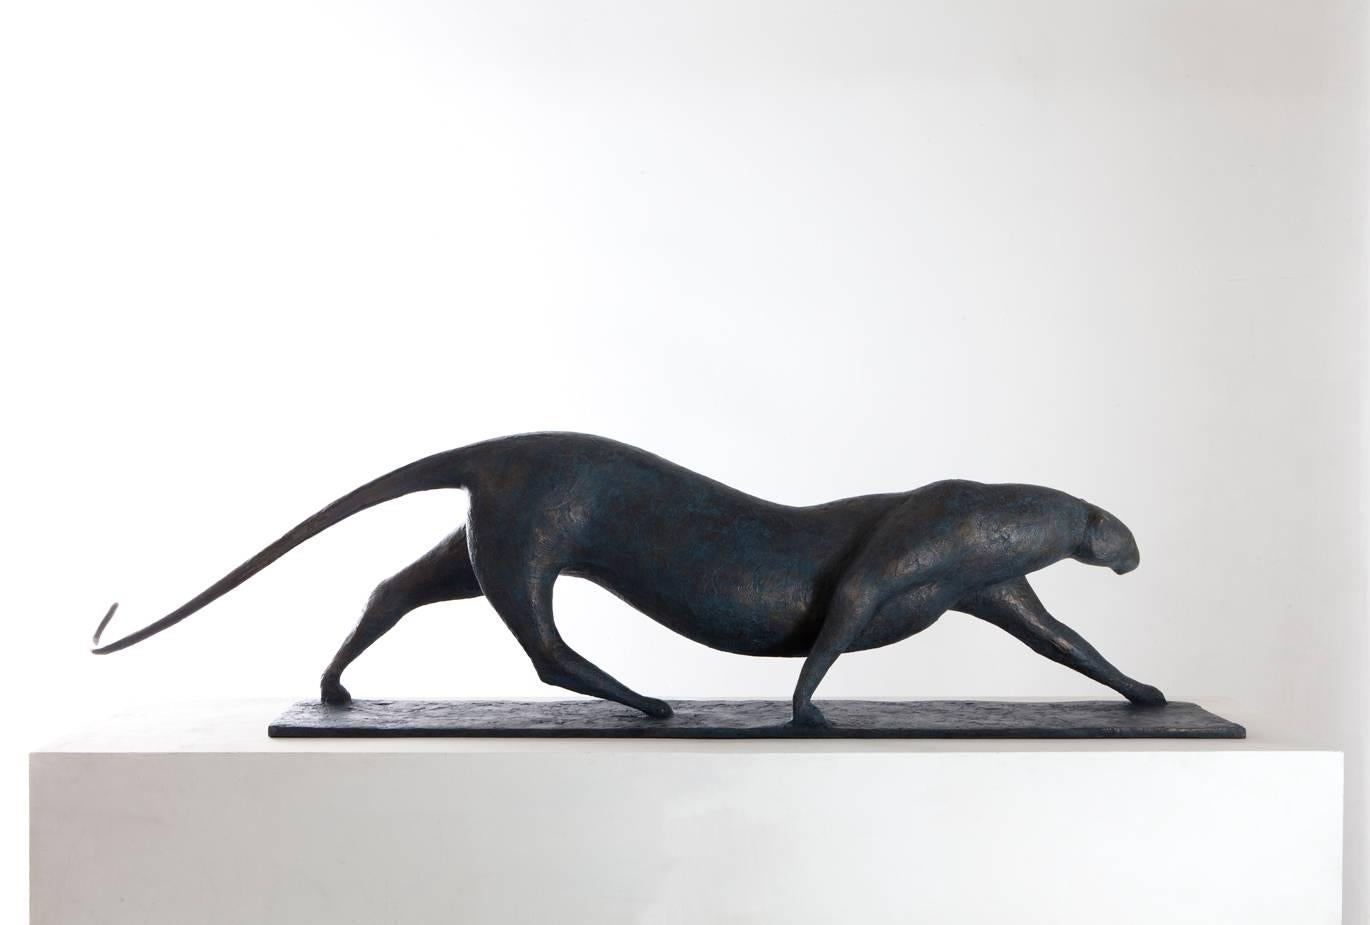 Large Feline est une sculpture en bronze de l'artiste contemporain français Pierre Yermia, dont les dimensions sont de 24 × 175 × 47 cm (9,4 × 68,9 × 18,5 in). 
La sculpture est signée et numérotée, elle fait partie d'une édition limitée à 8